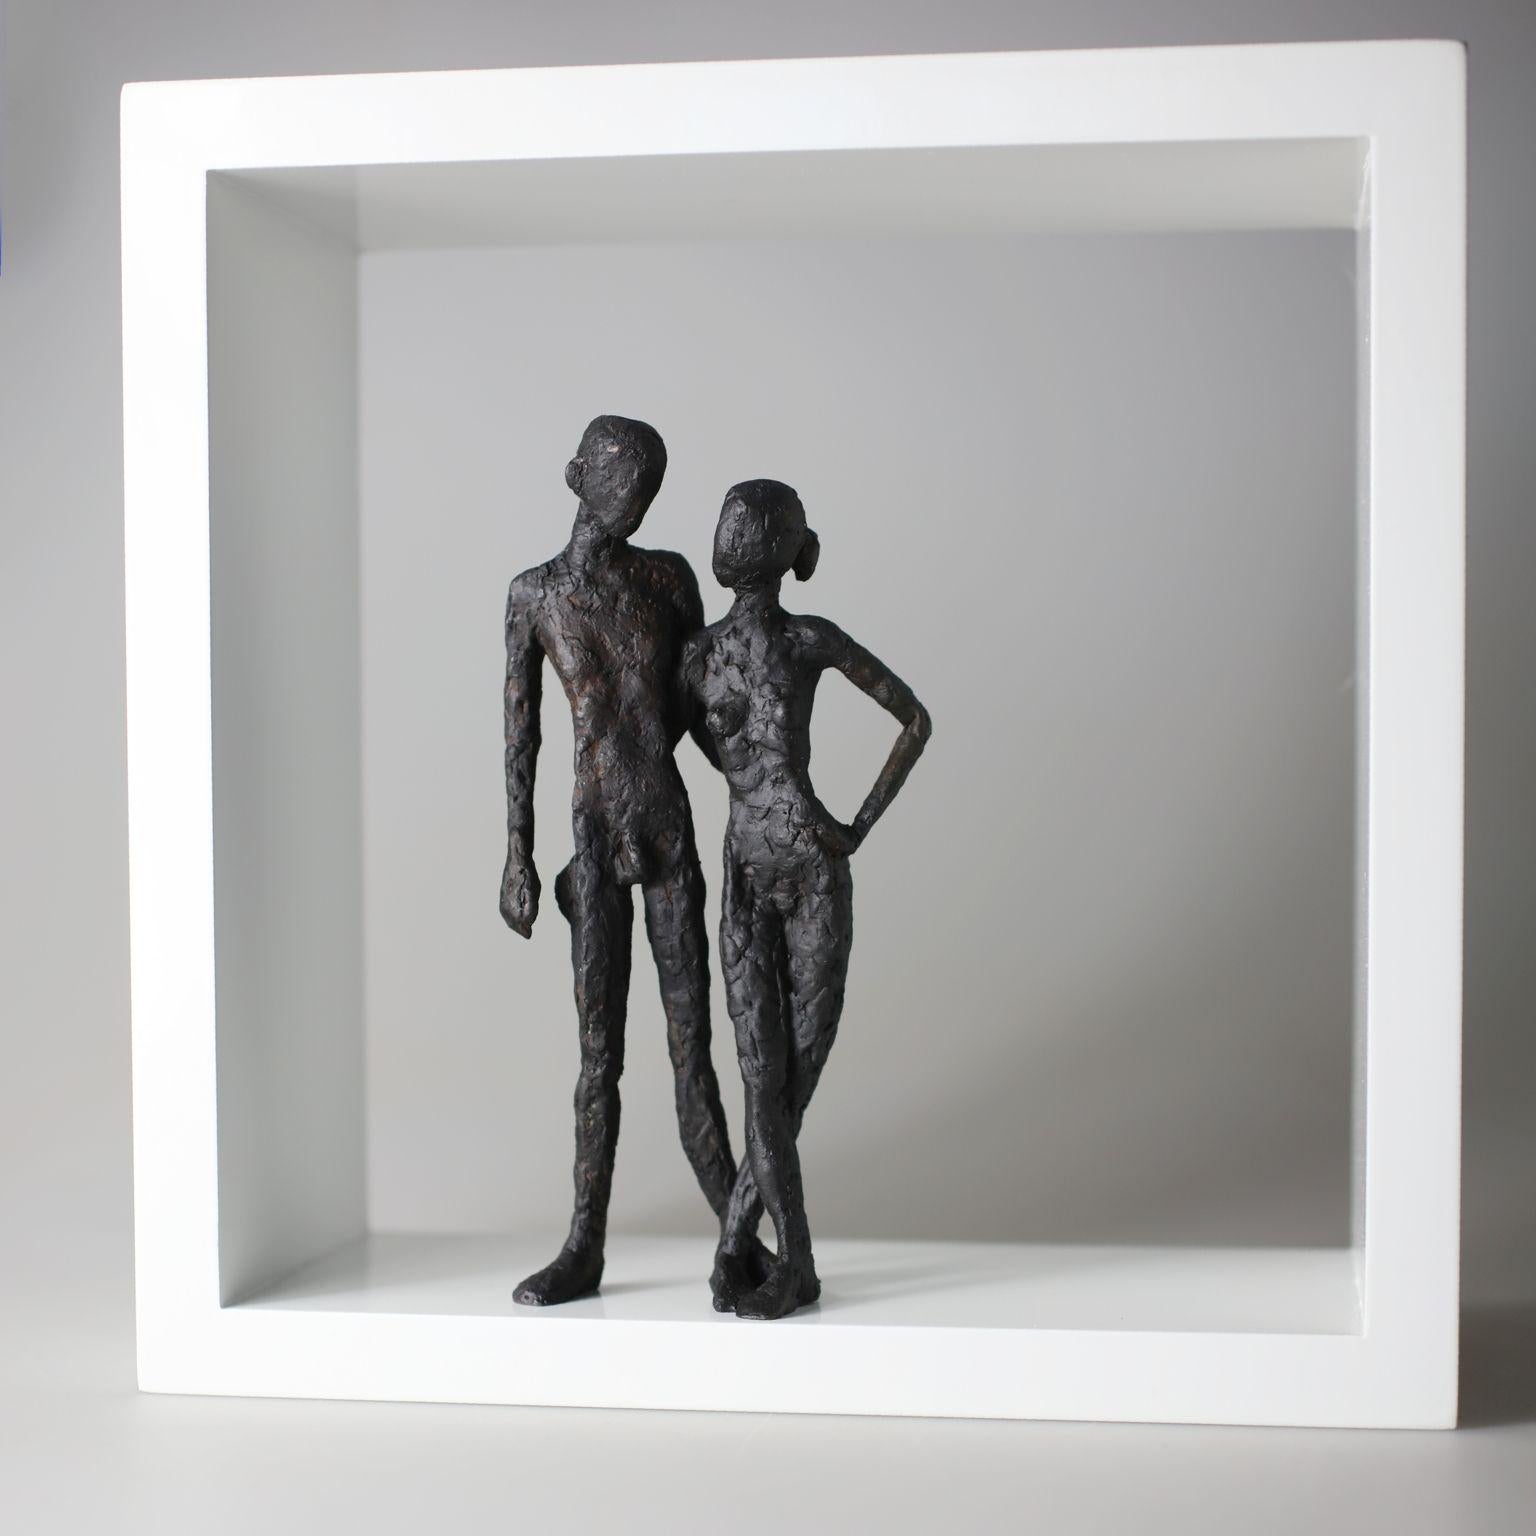 Zeitgenössische minimalistische Bronzeskulptur eines nackten Paares, das in einem Holzrahmen steht